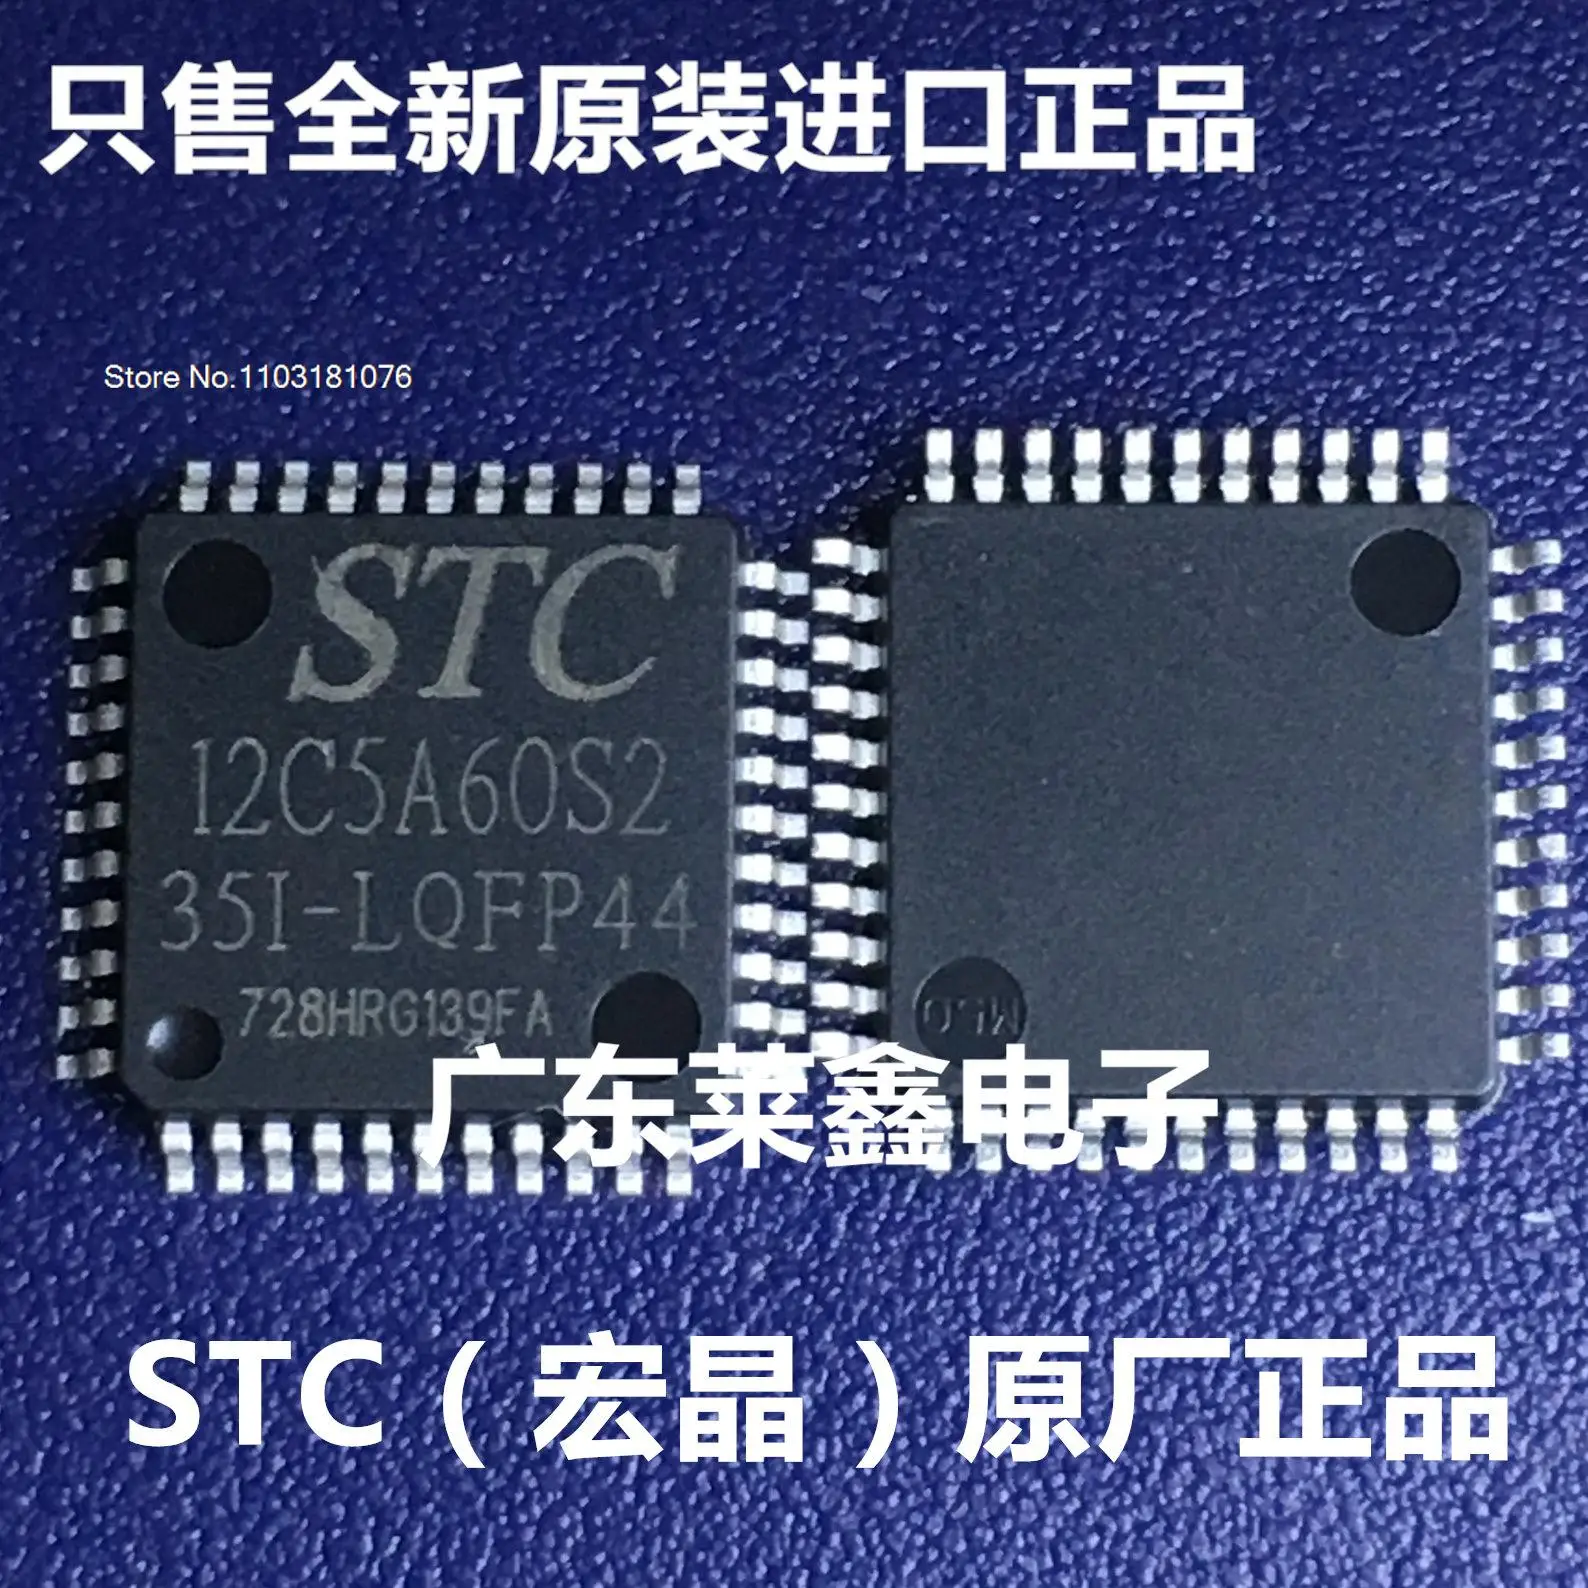 

5 шт./партия STC12C5A60S2-35I-LQFP44 STC12C5A60S2 STC